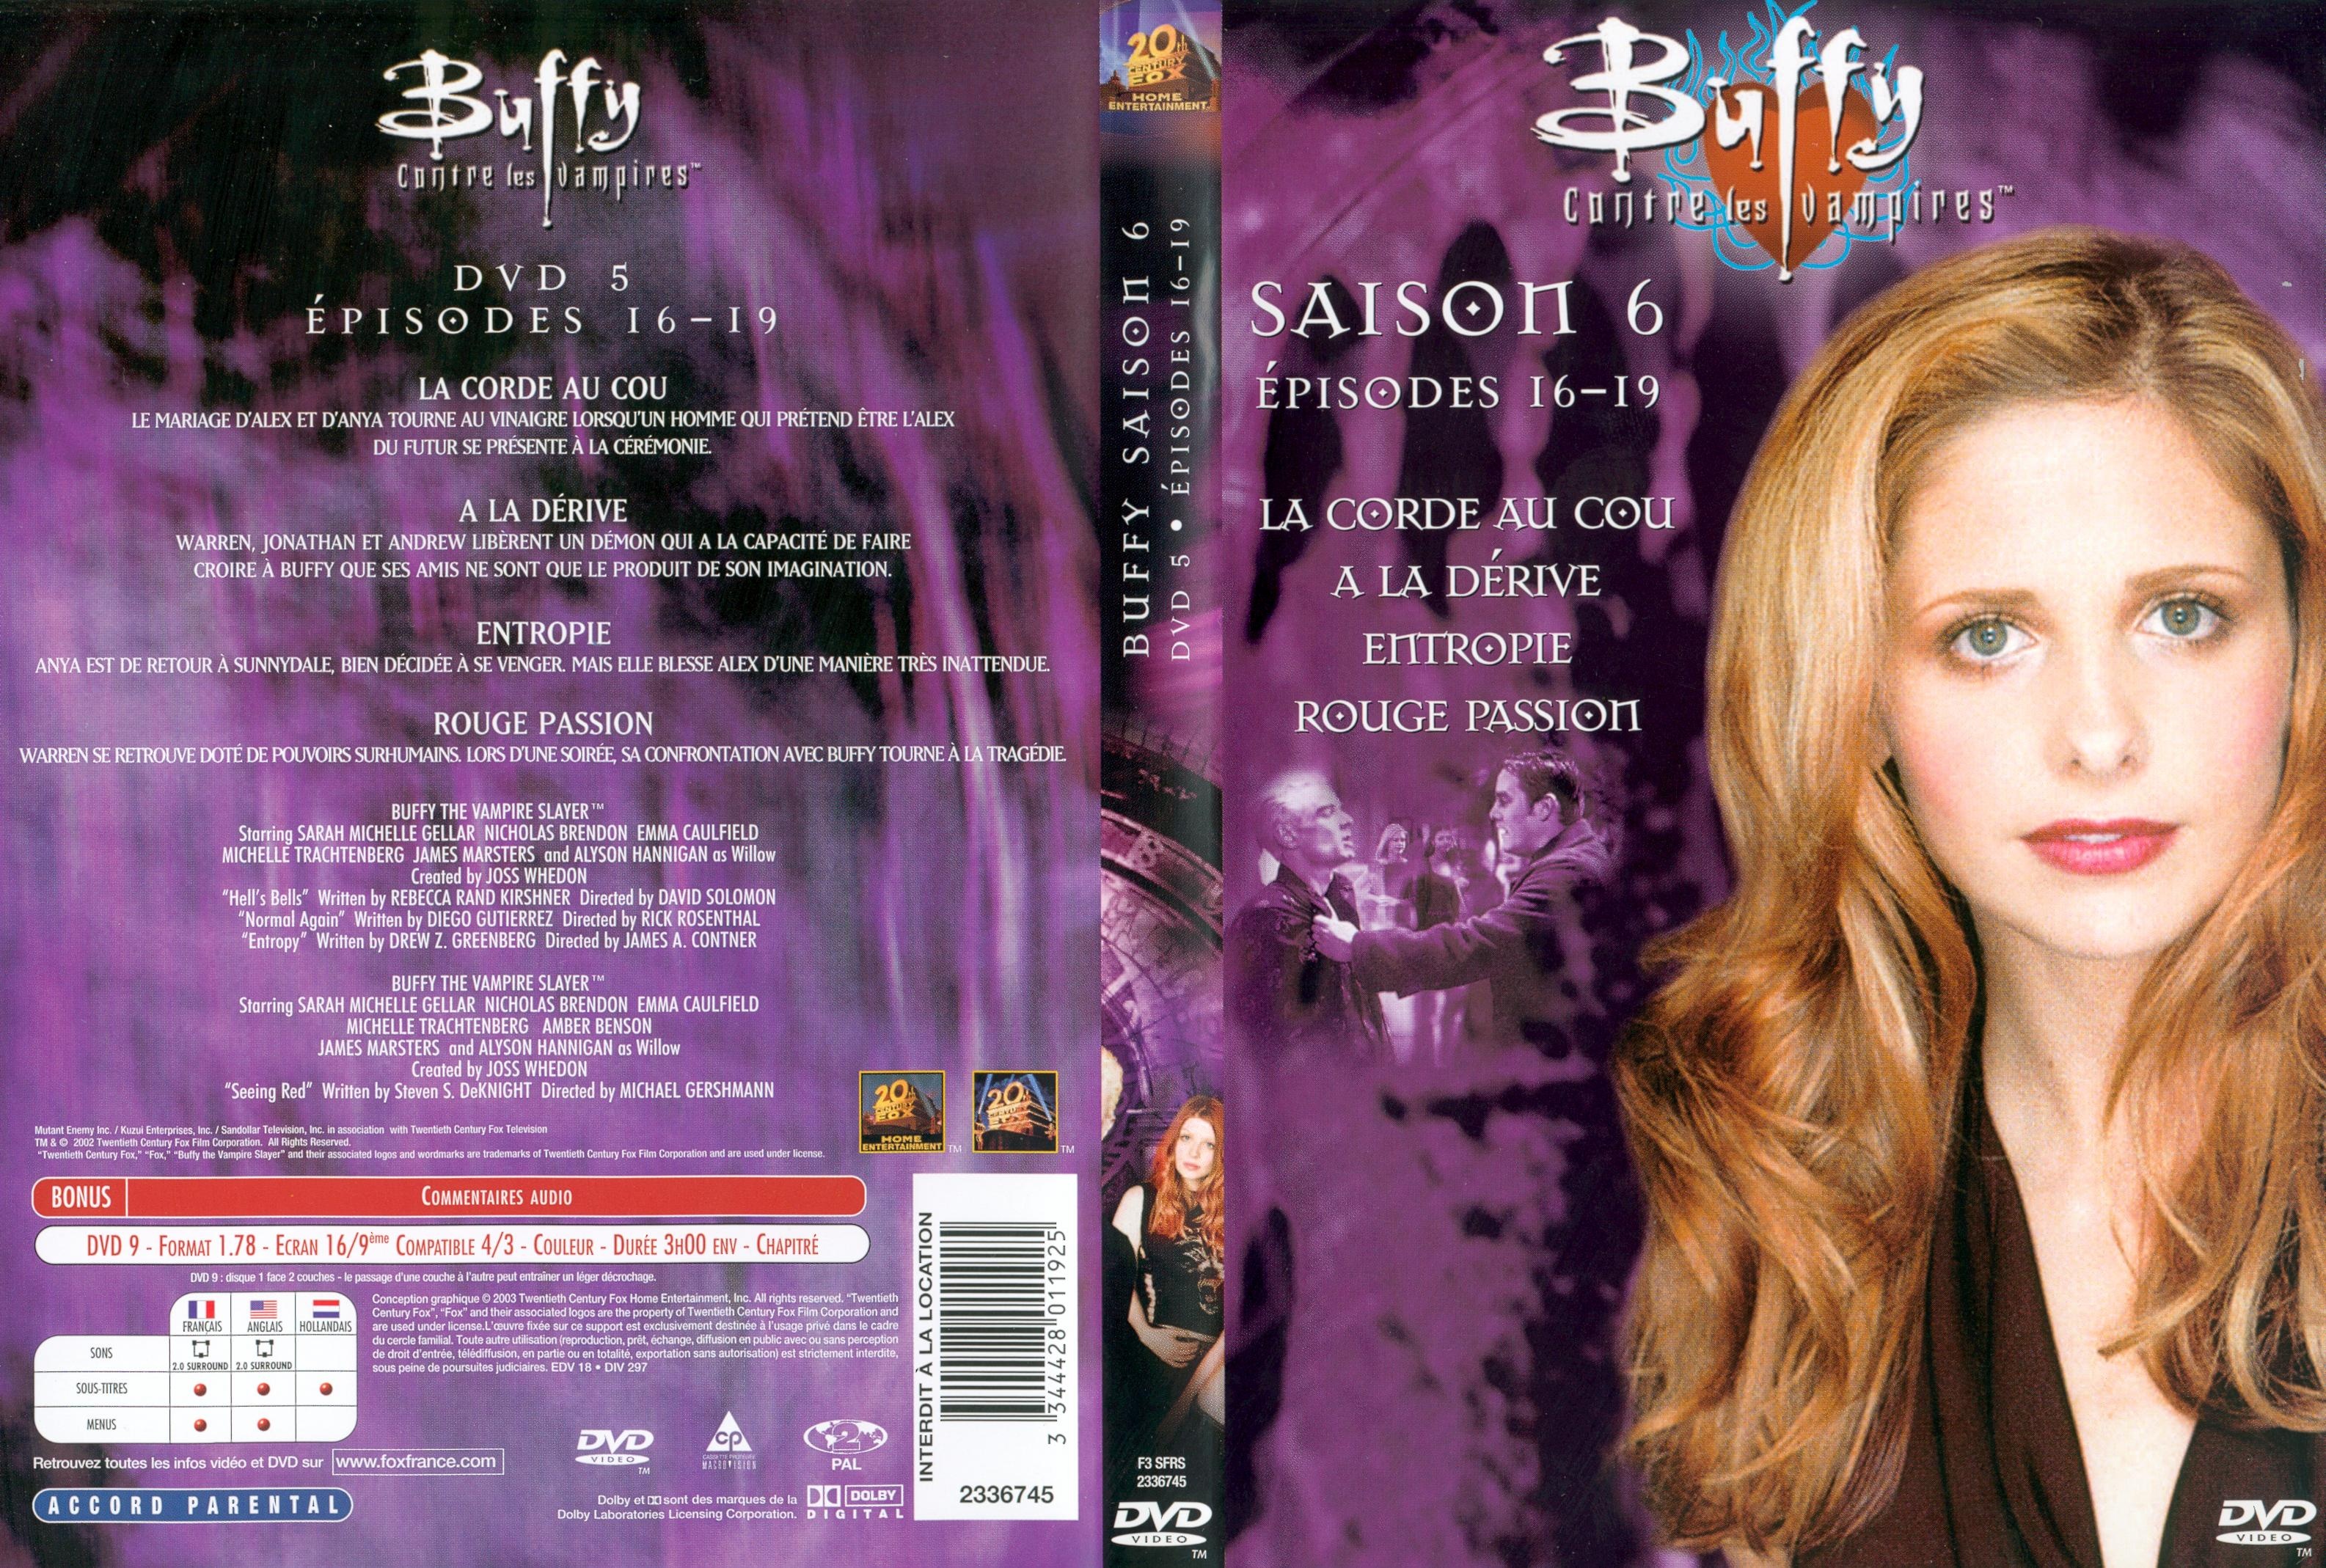 Jaquette DVD Buffy contre les vampires Saison 6 DVD 5